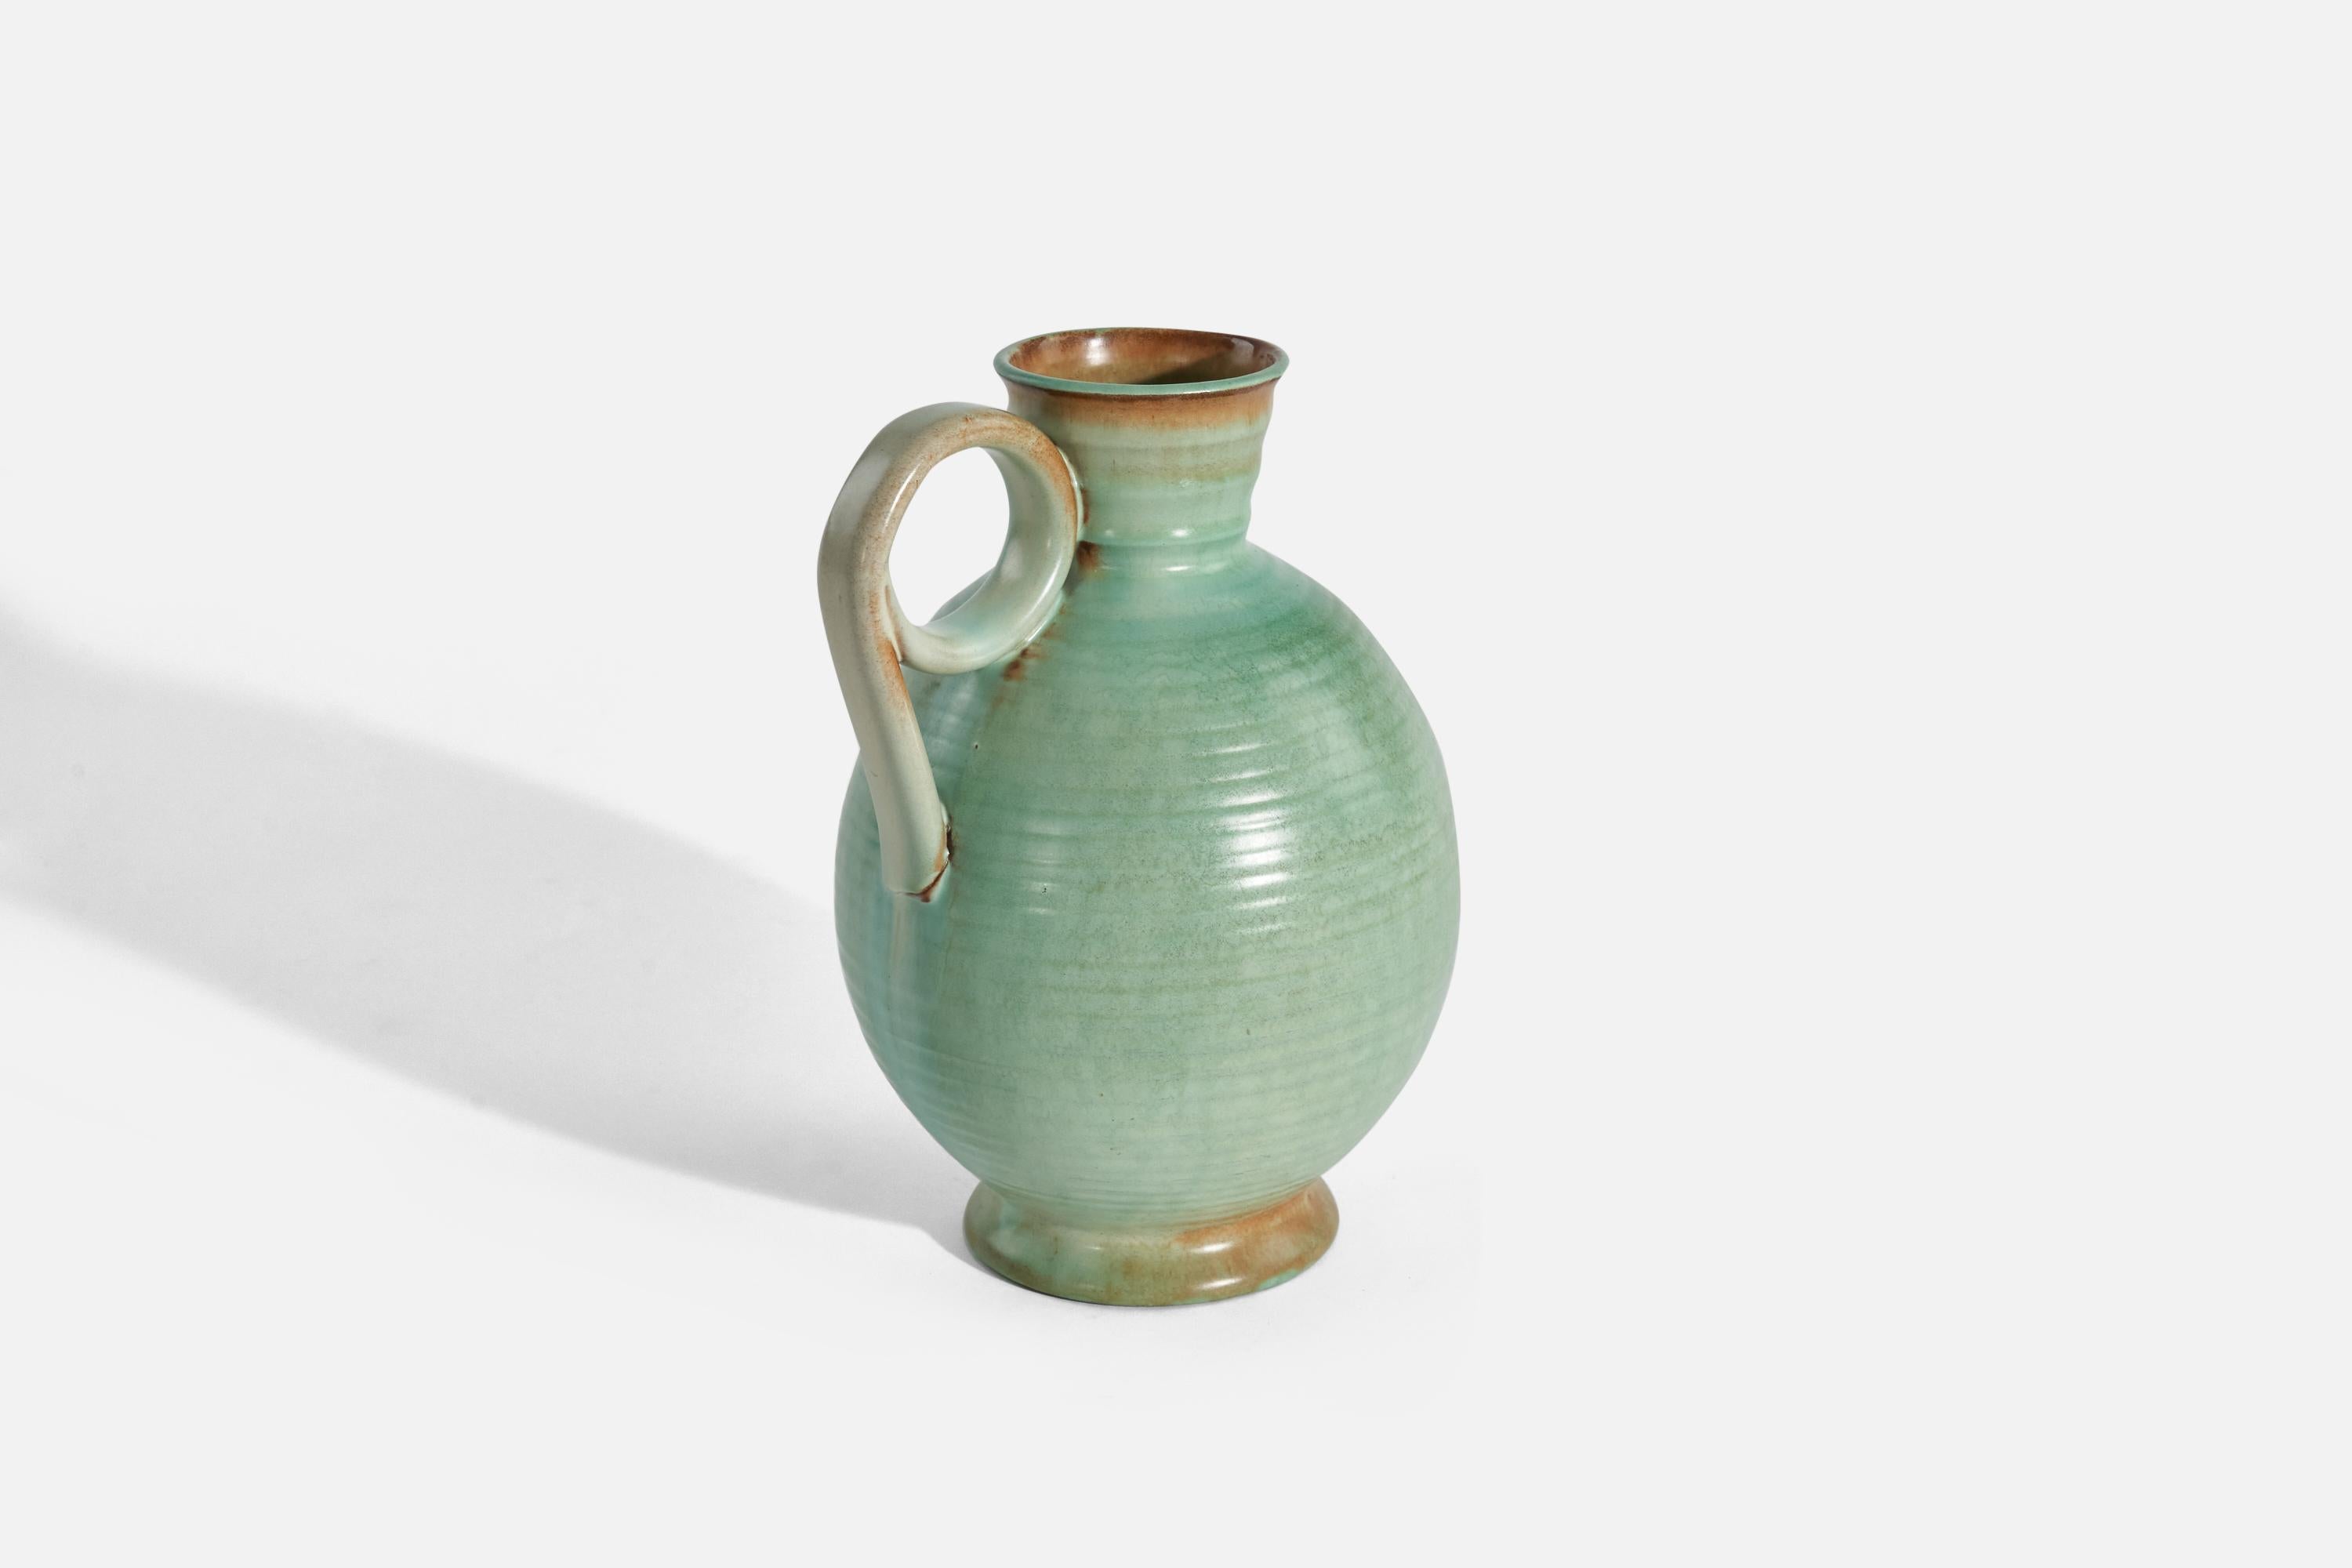 A green, glazed stoneware vase designed by Hans Erik Rosenkvist and produced by A&J Höganäs, Sweden, c. 1930s.

